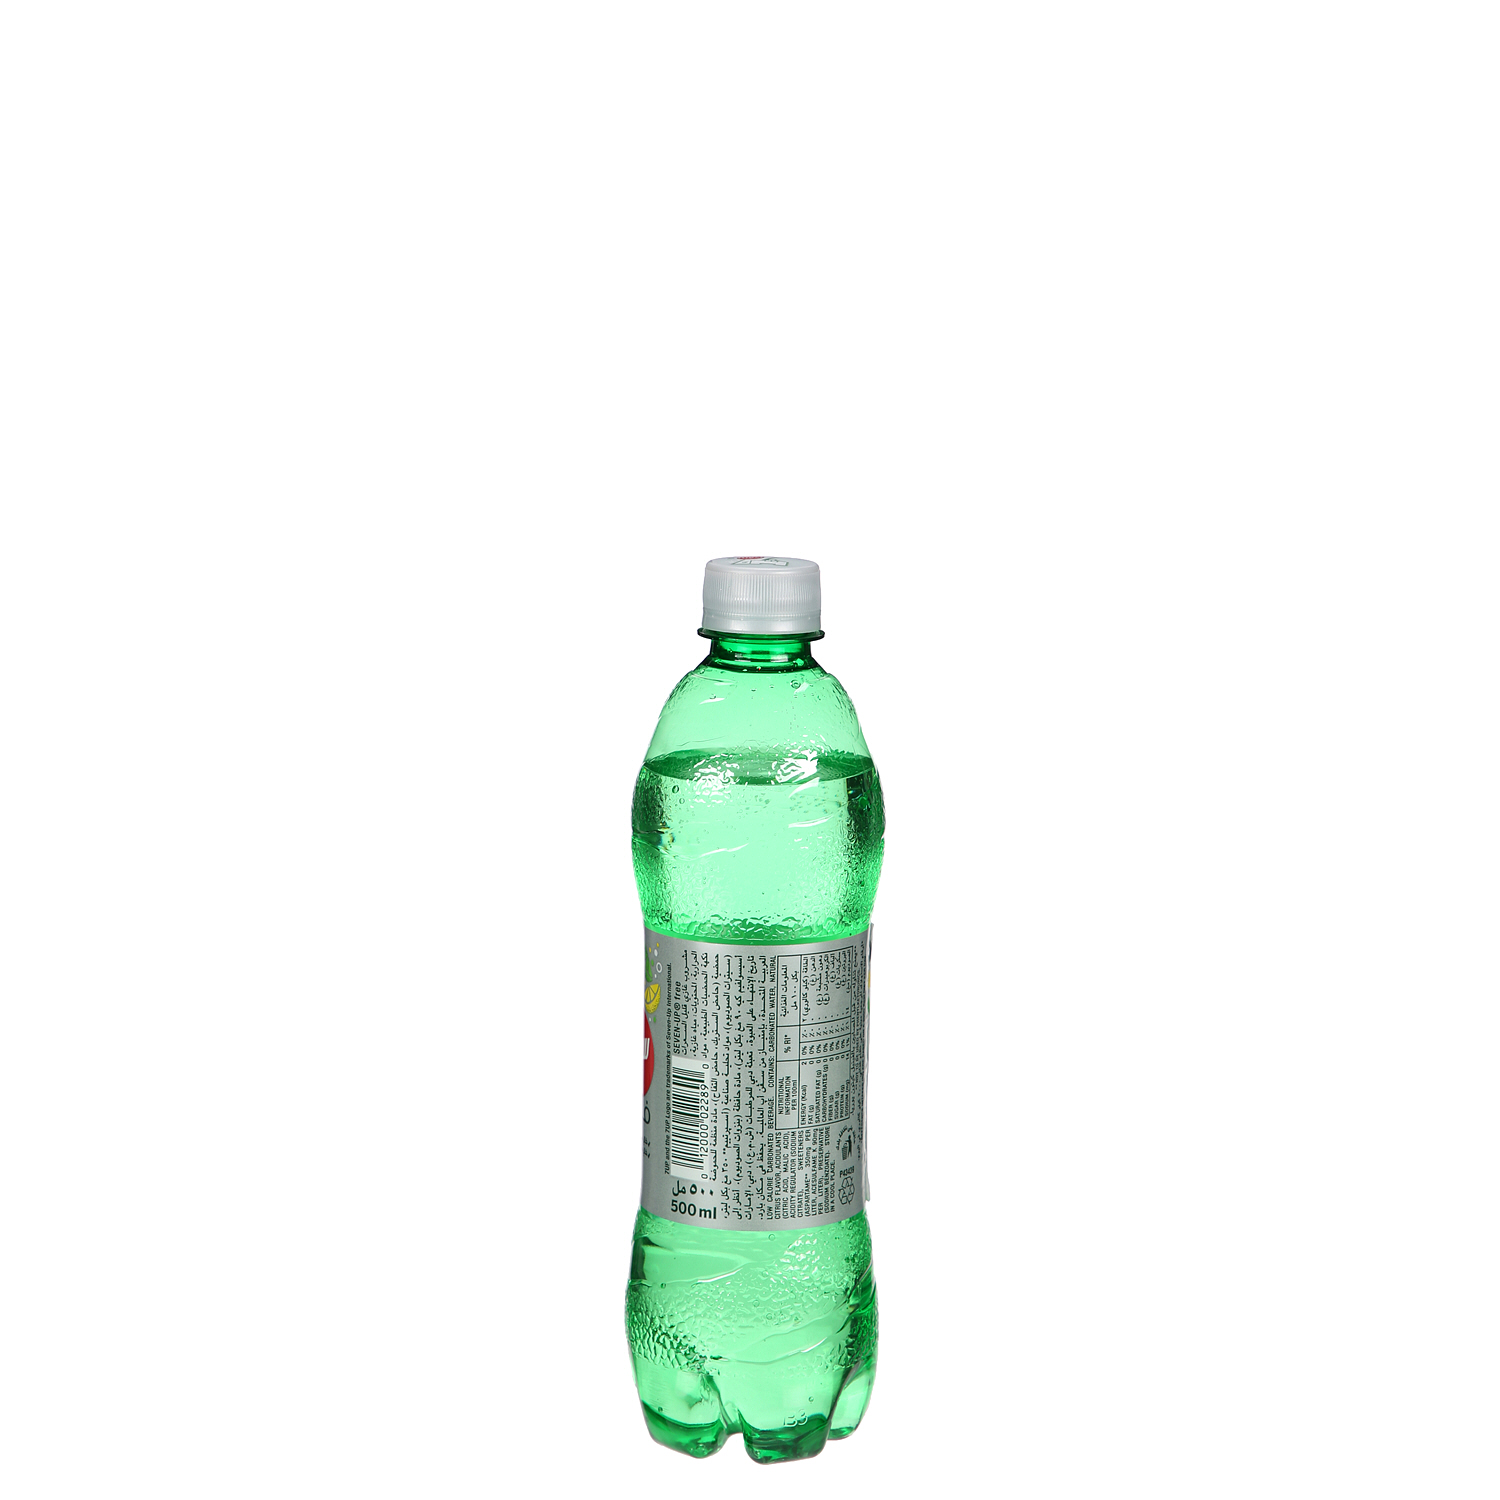 7UP Diet Plastic Bottle 500 ml